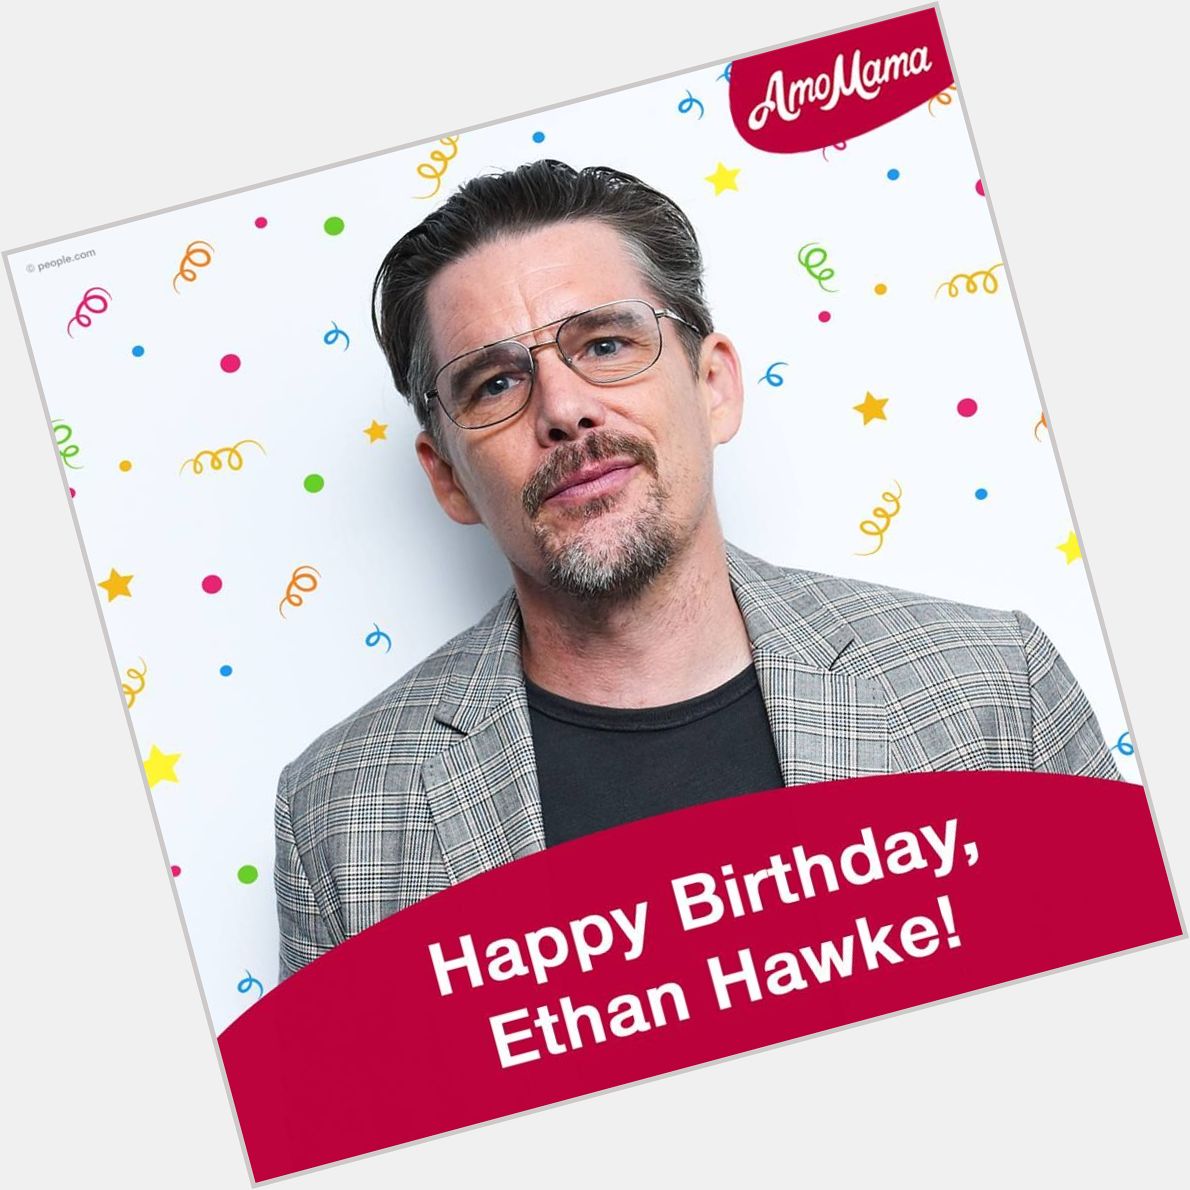  Happy Birthday, Ethan Hawke!  